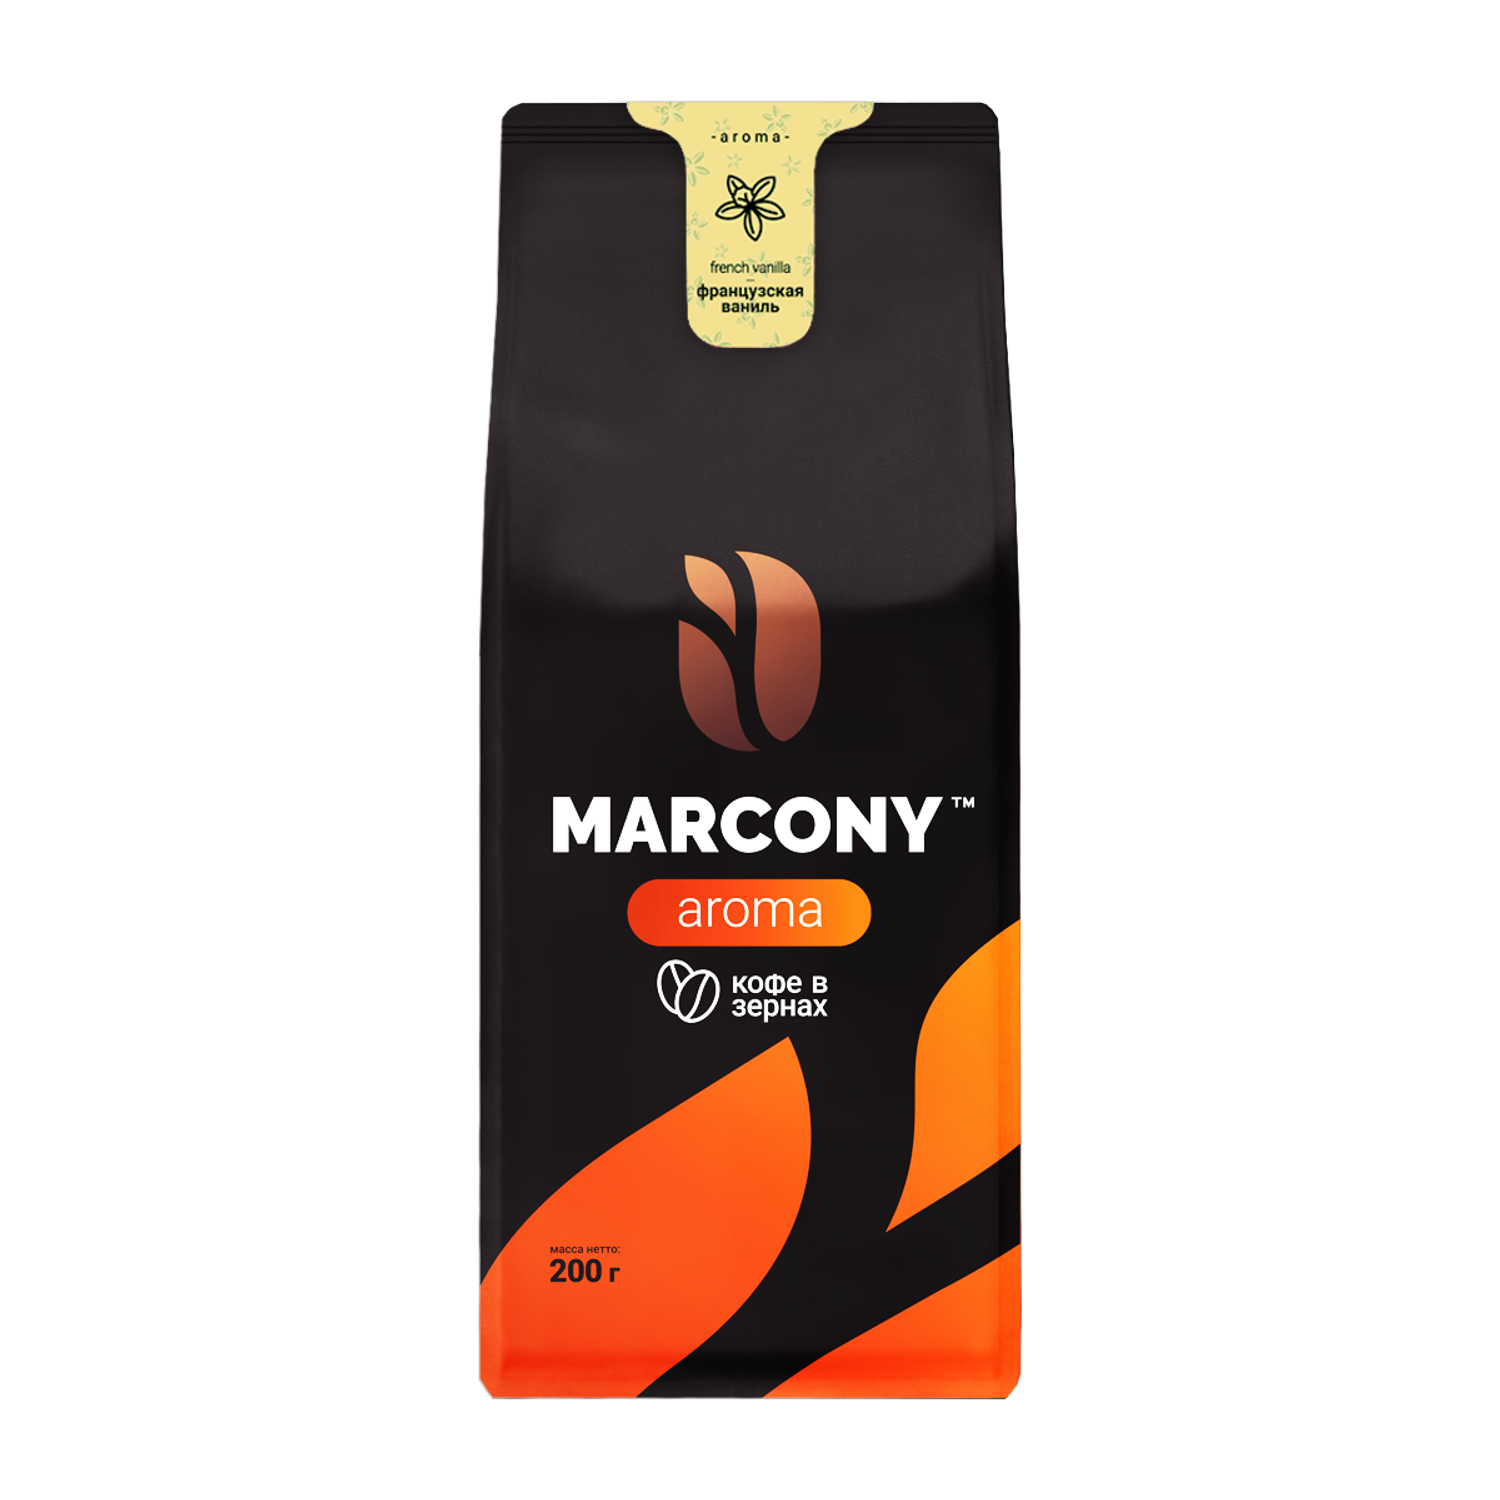 Кофе в зернах Marcony Aroma со вкусом Французской ванили 200 г - фото 1